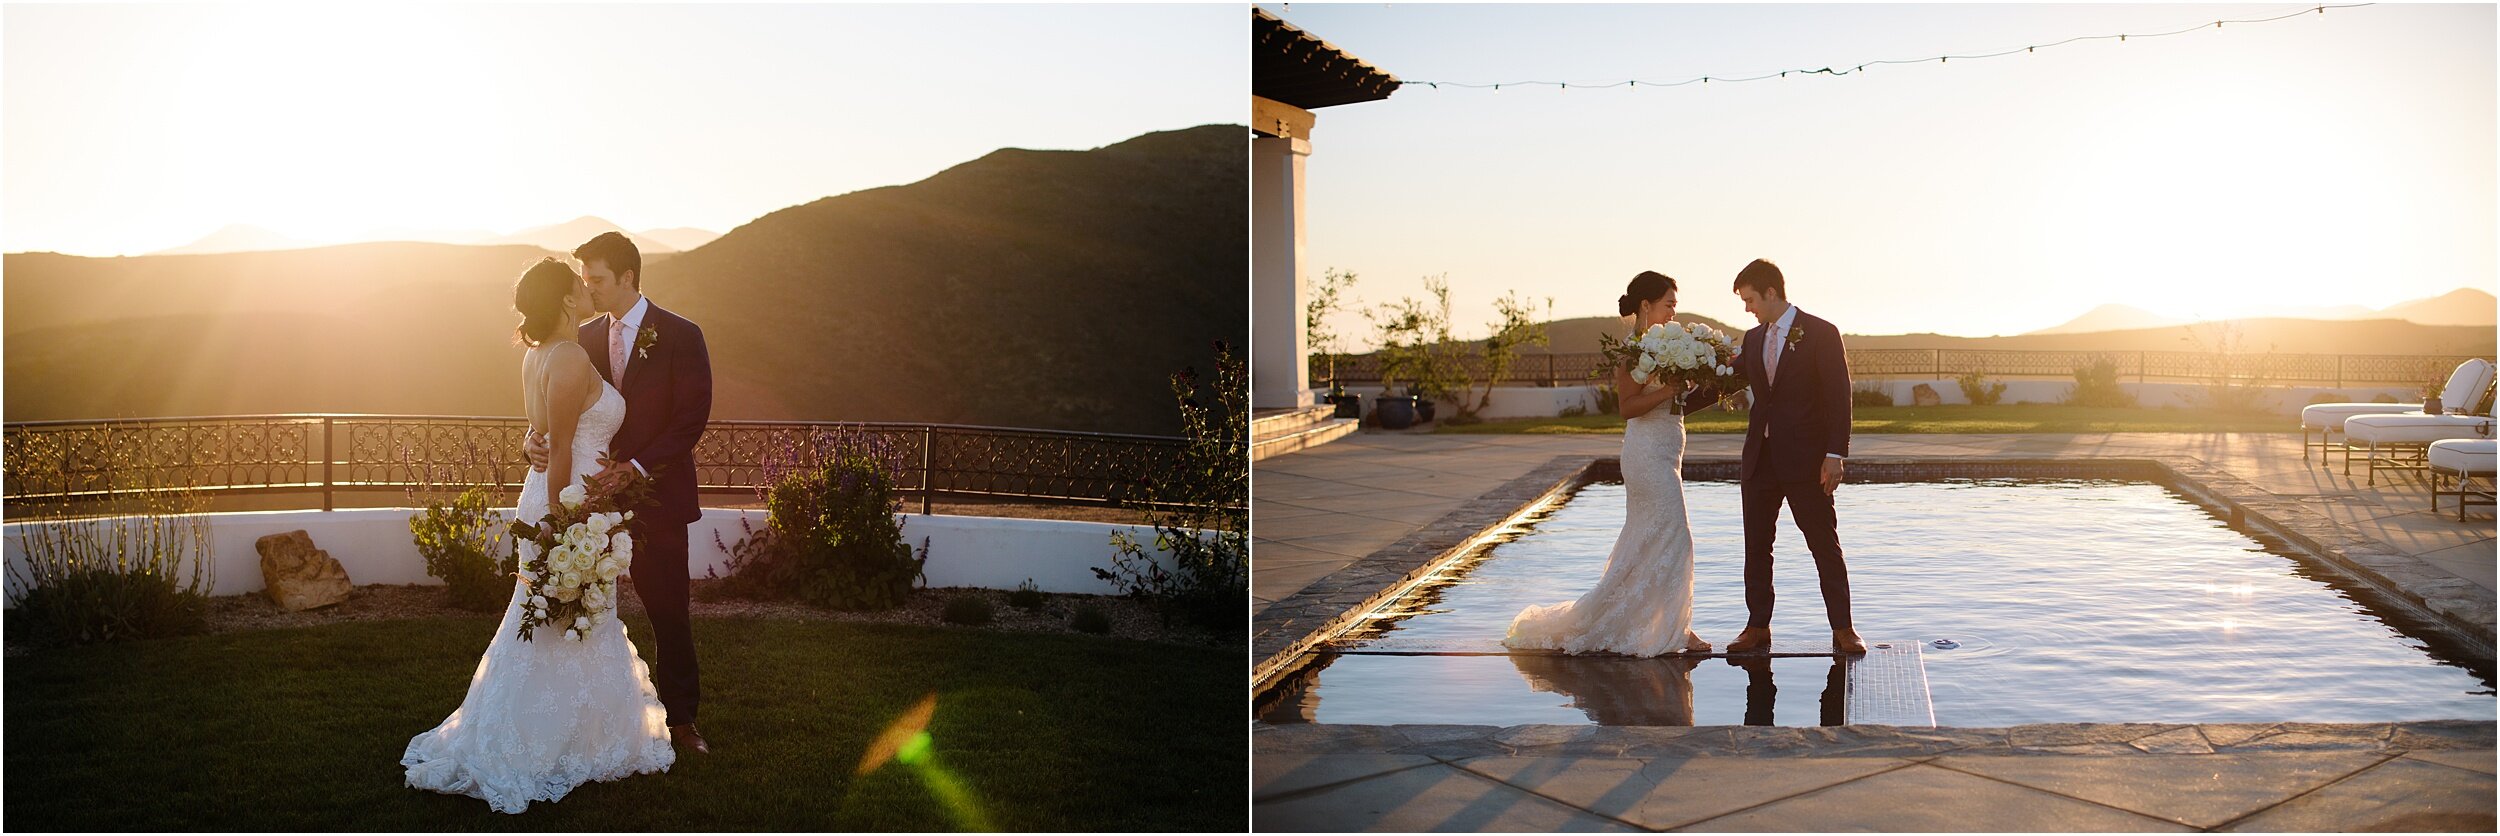 Amy and Jeff | Small Malibu Wedding | Malibu Elopement Photographer_0049.jpg